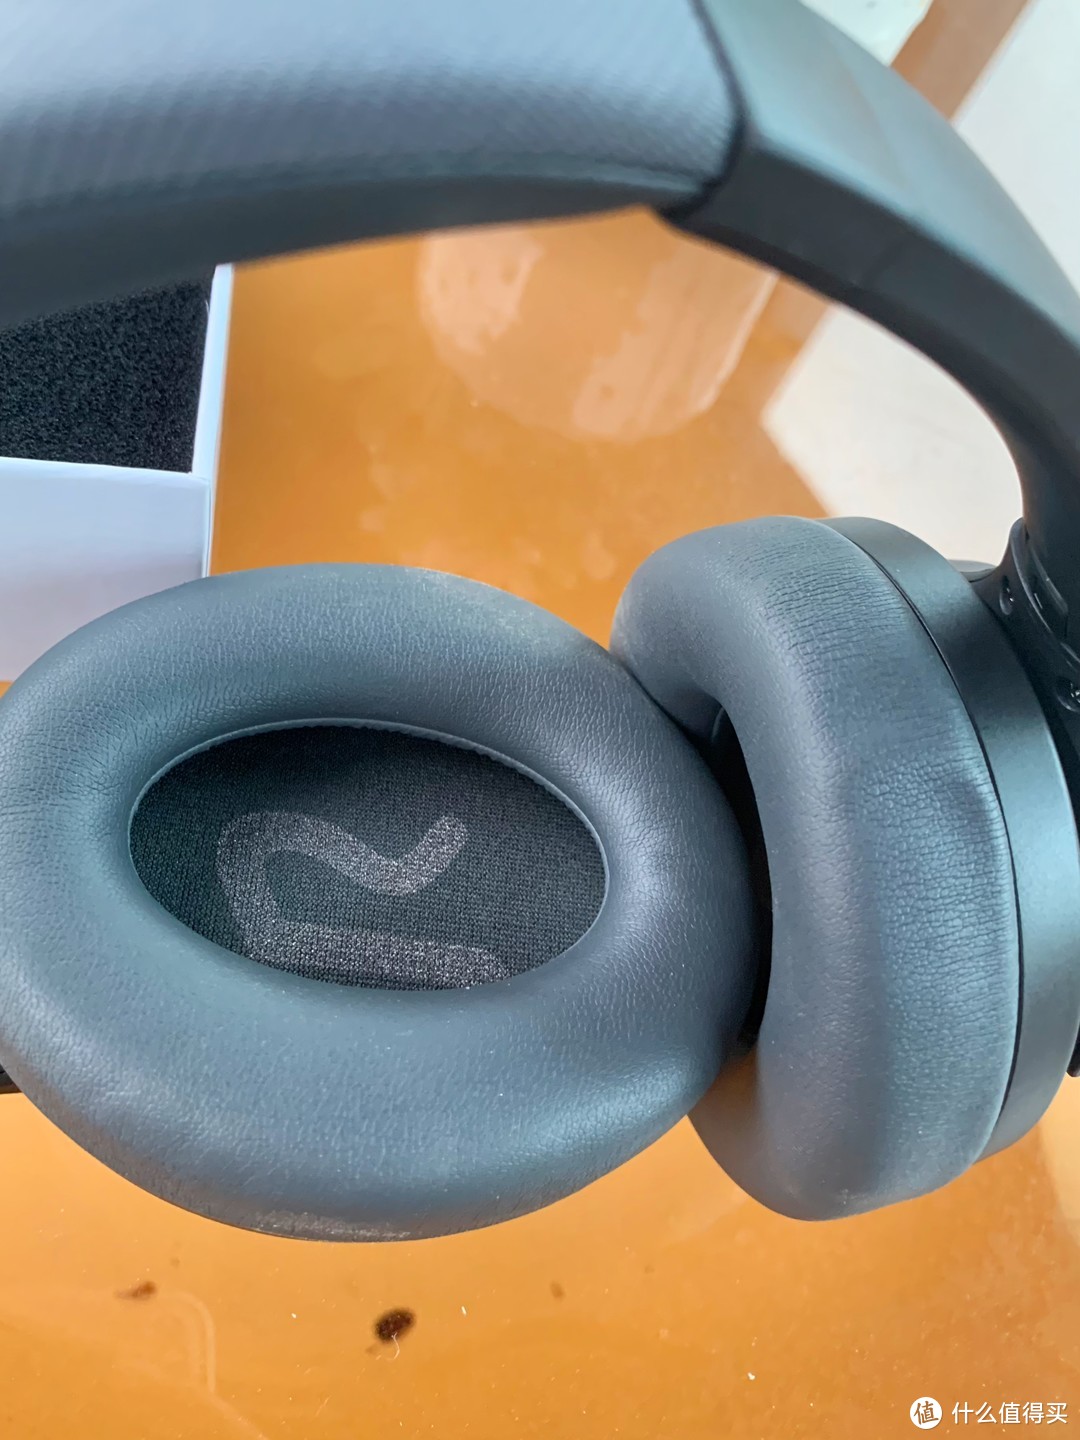 200内降噪小金标耳机|SOUNDPEATS Space头戴式蓝牙耳机上手体验